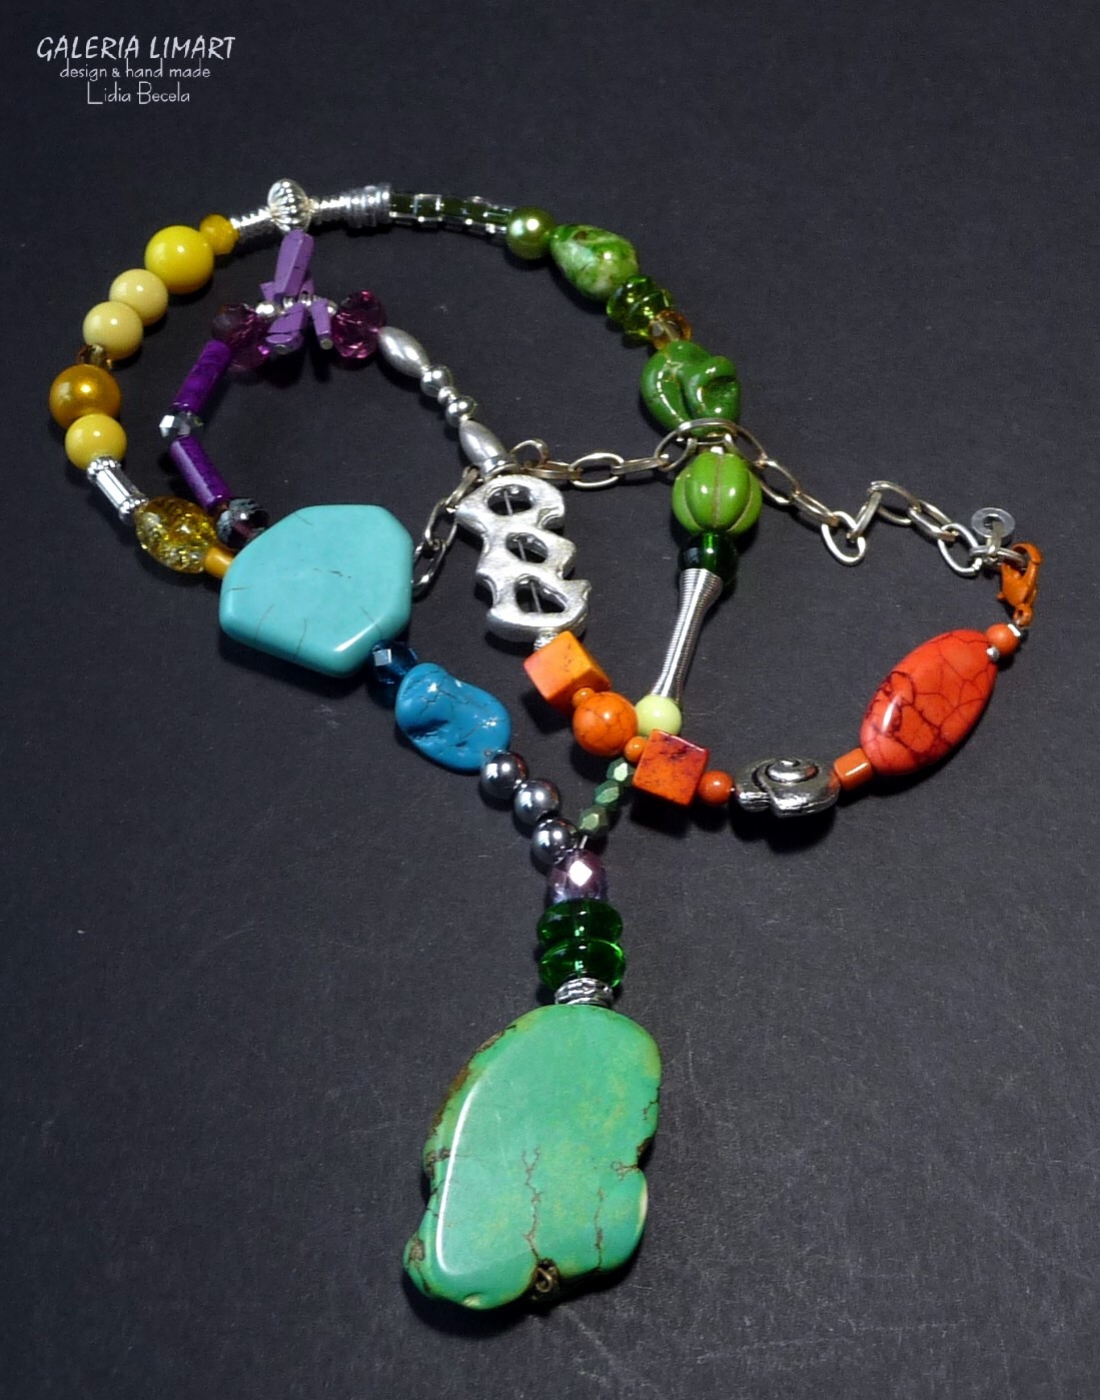 Bajecznie kolorowe przeplatające się różnokolorowe howlity szkło weneckie i seed beads w naszyjniku handmade